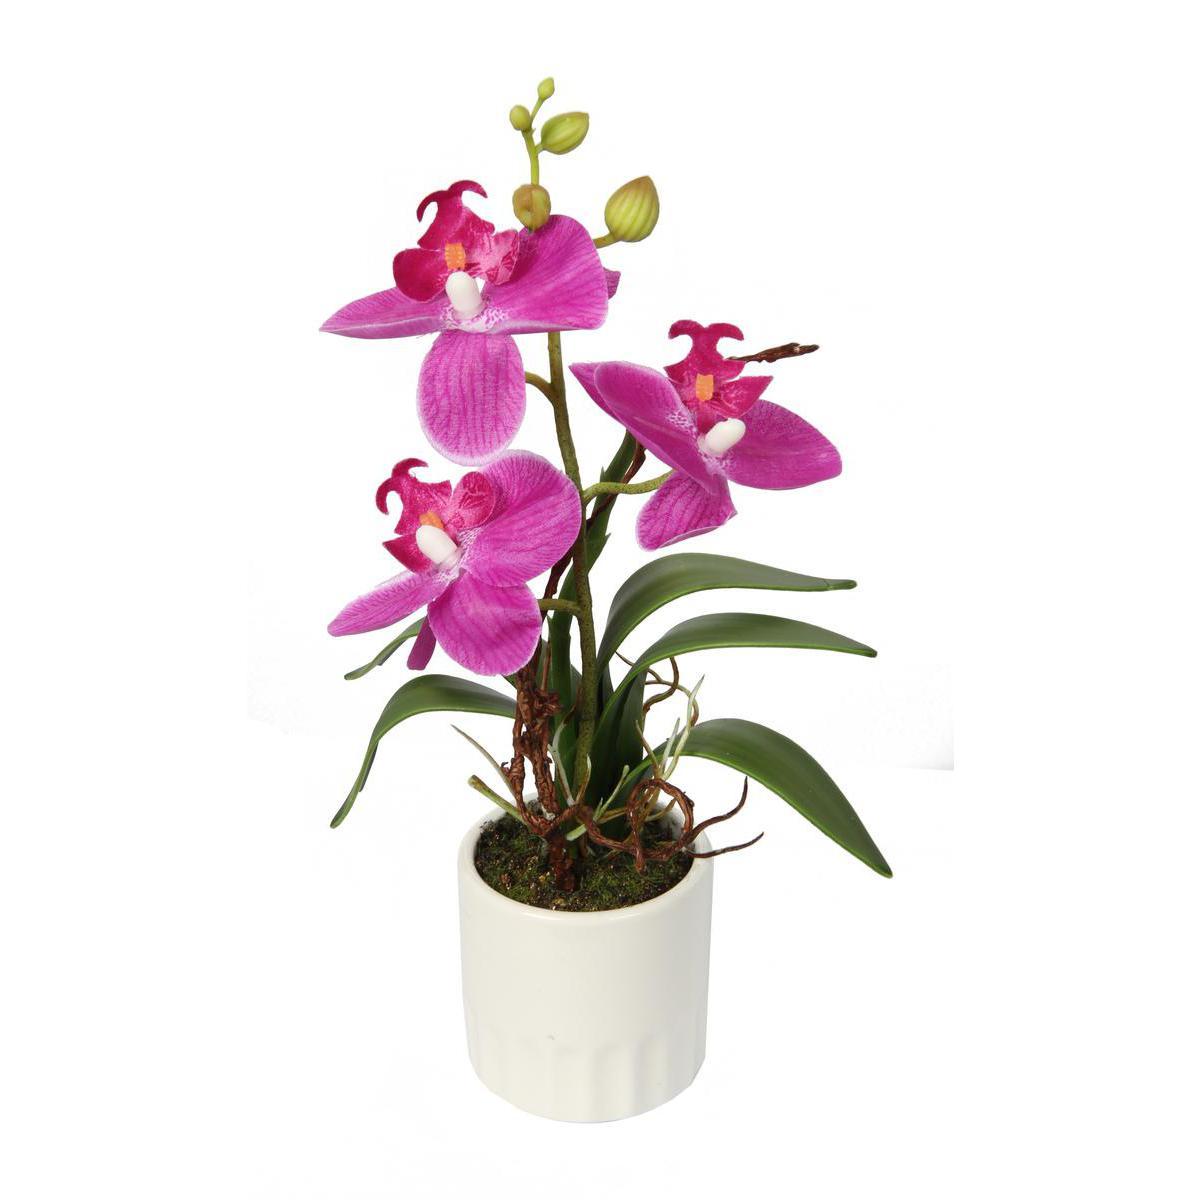 Orchidée en pot - Céramique, plastique et polyester - Hauteur 28 cm - Blanc et fuchsia